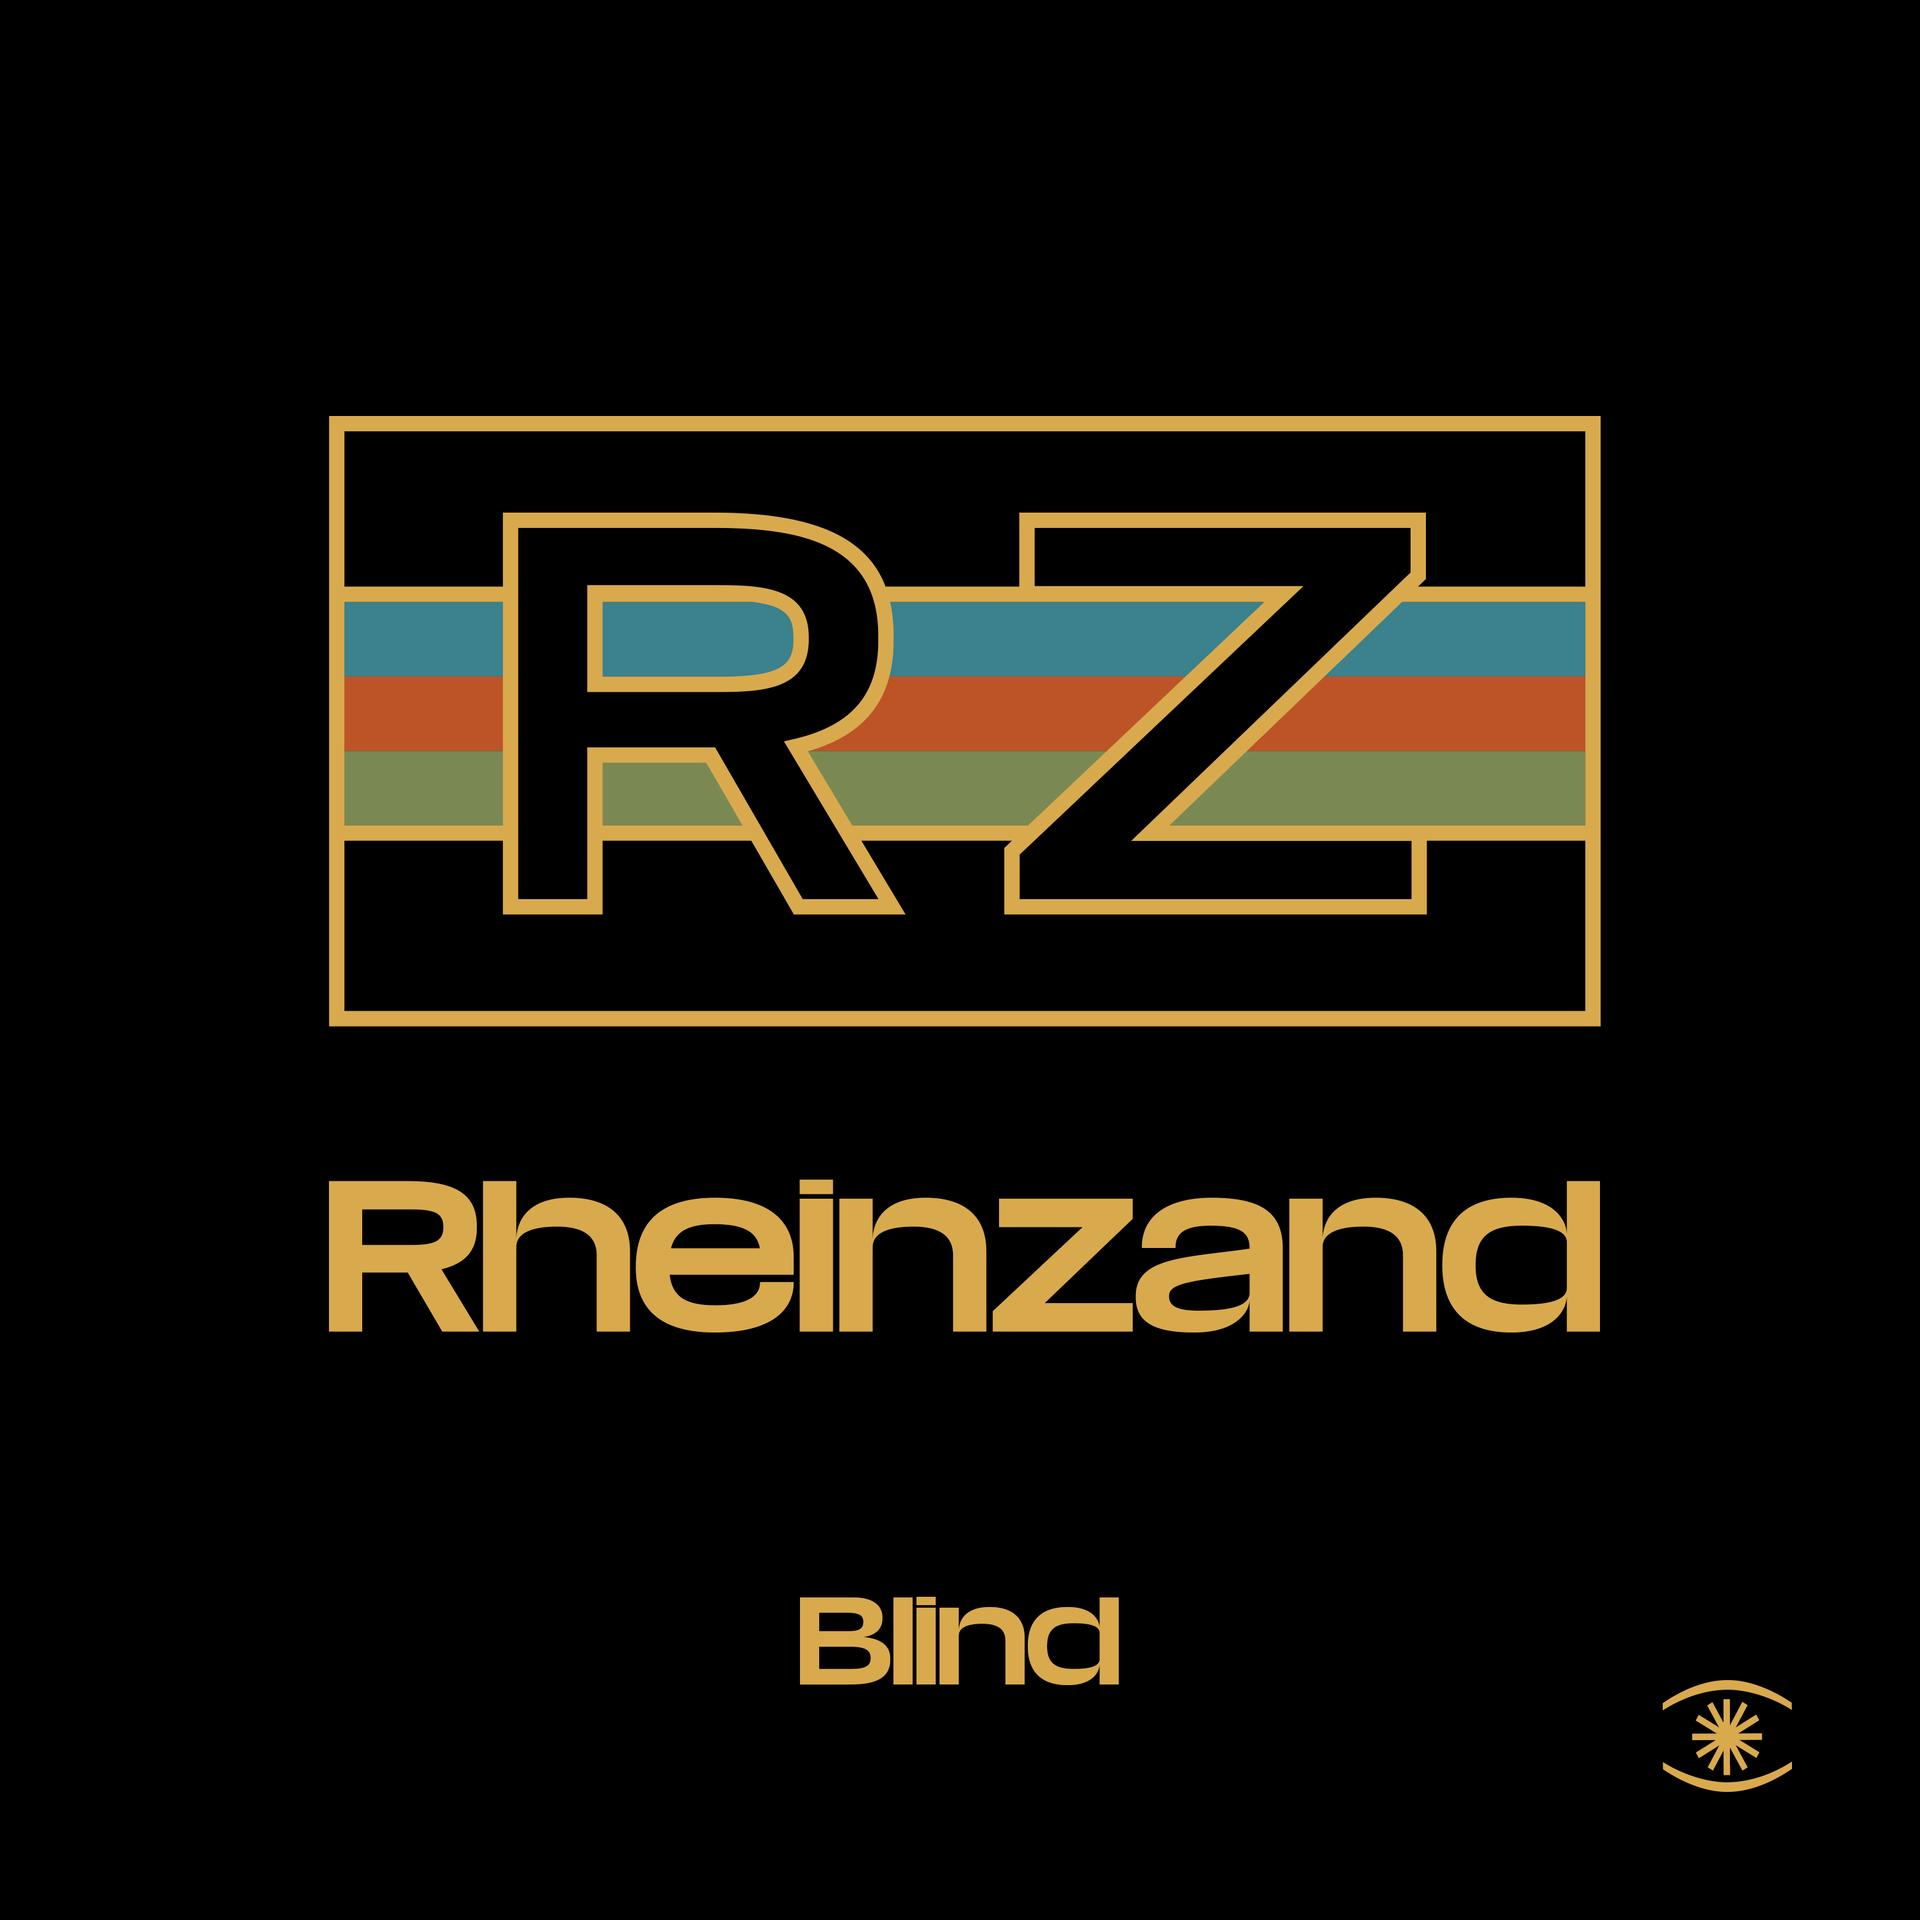 - Blind - (Vinyl) Rheinzand